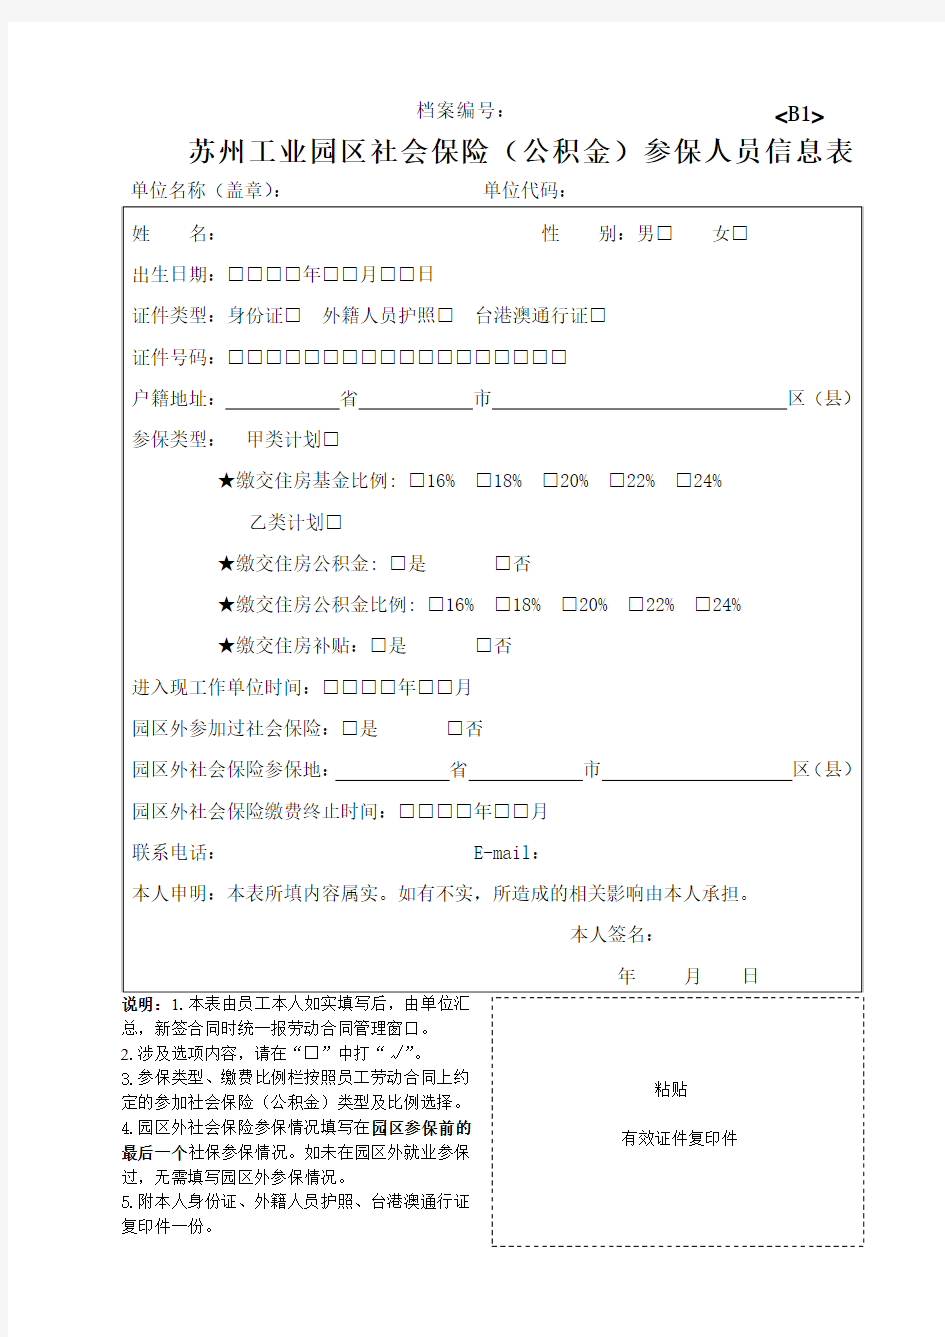 苏州工业园区社会保险(公积金)参保人员信息表(B1)